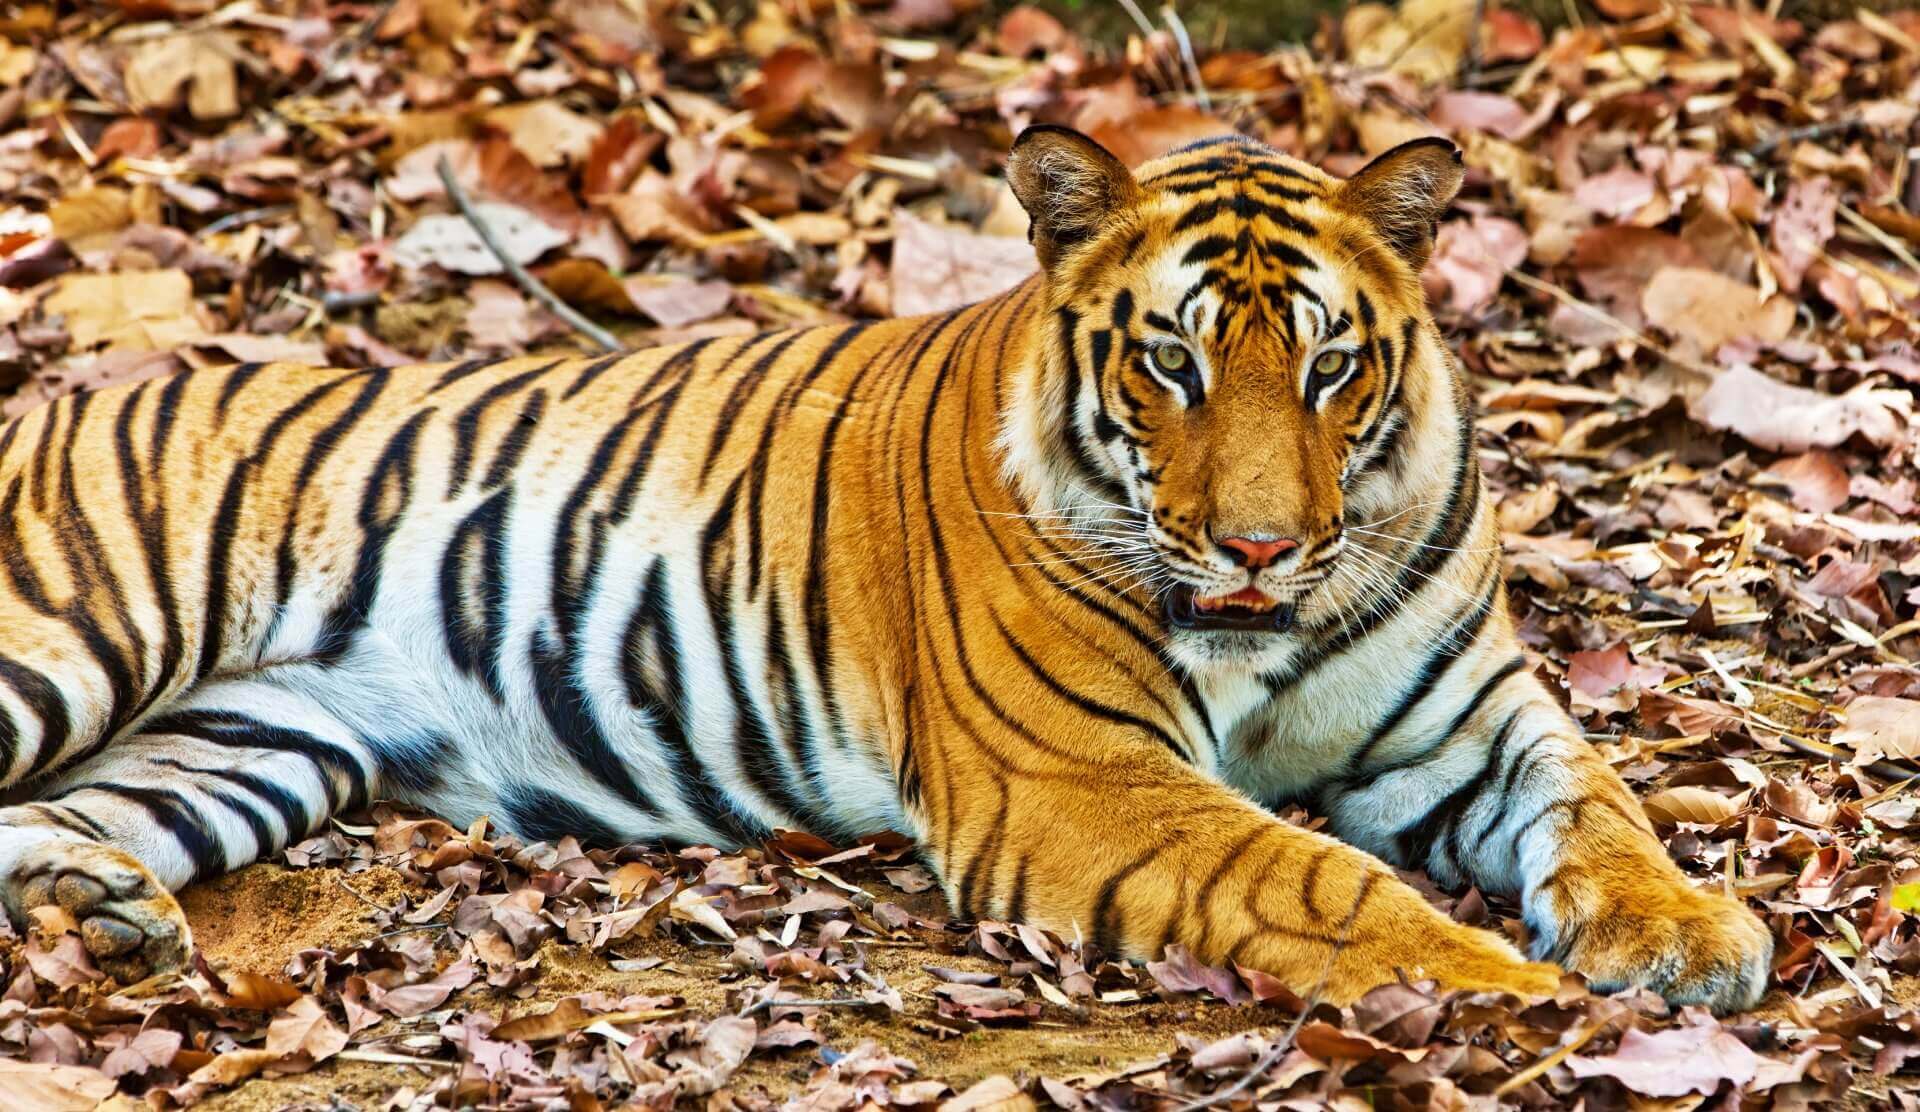 Taj with Tiger